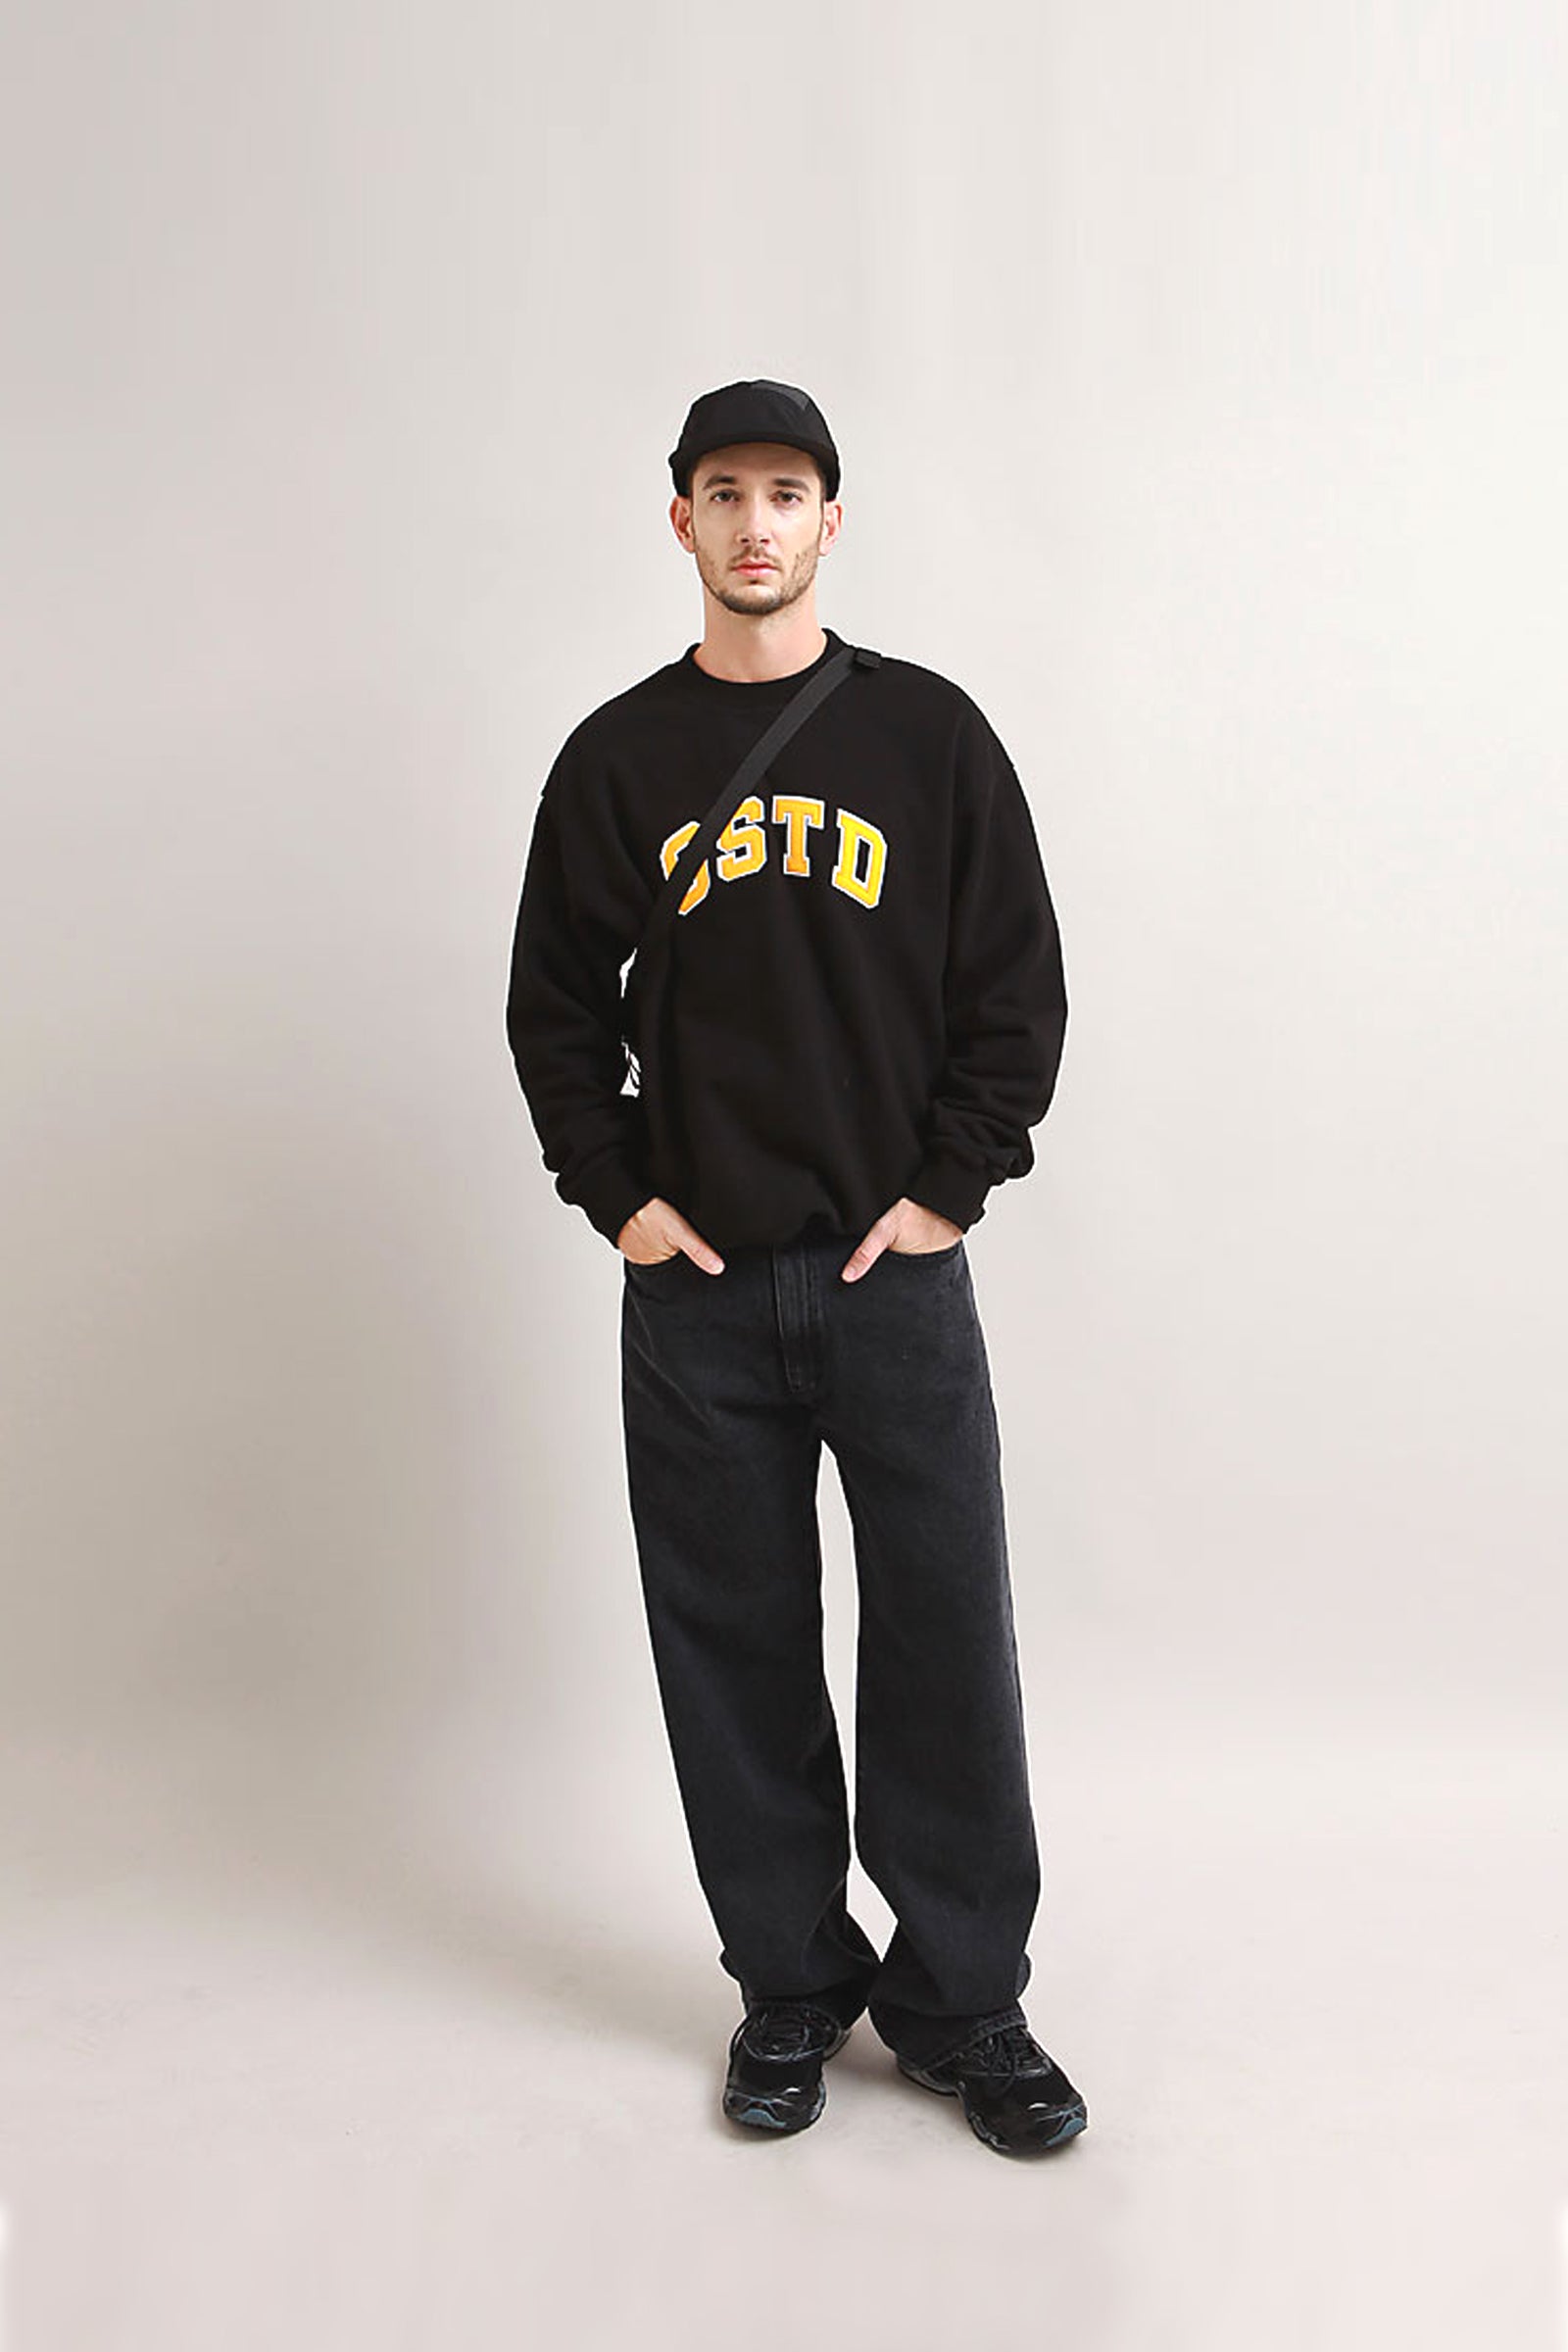 Outstanding & Co. - OSTD Collegiate Sweatshirt - Black